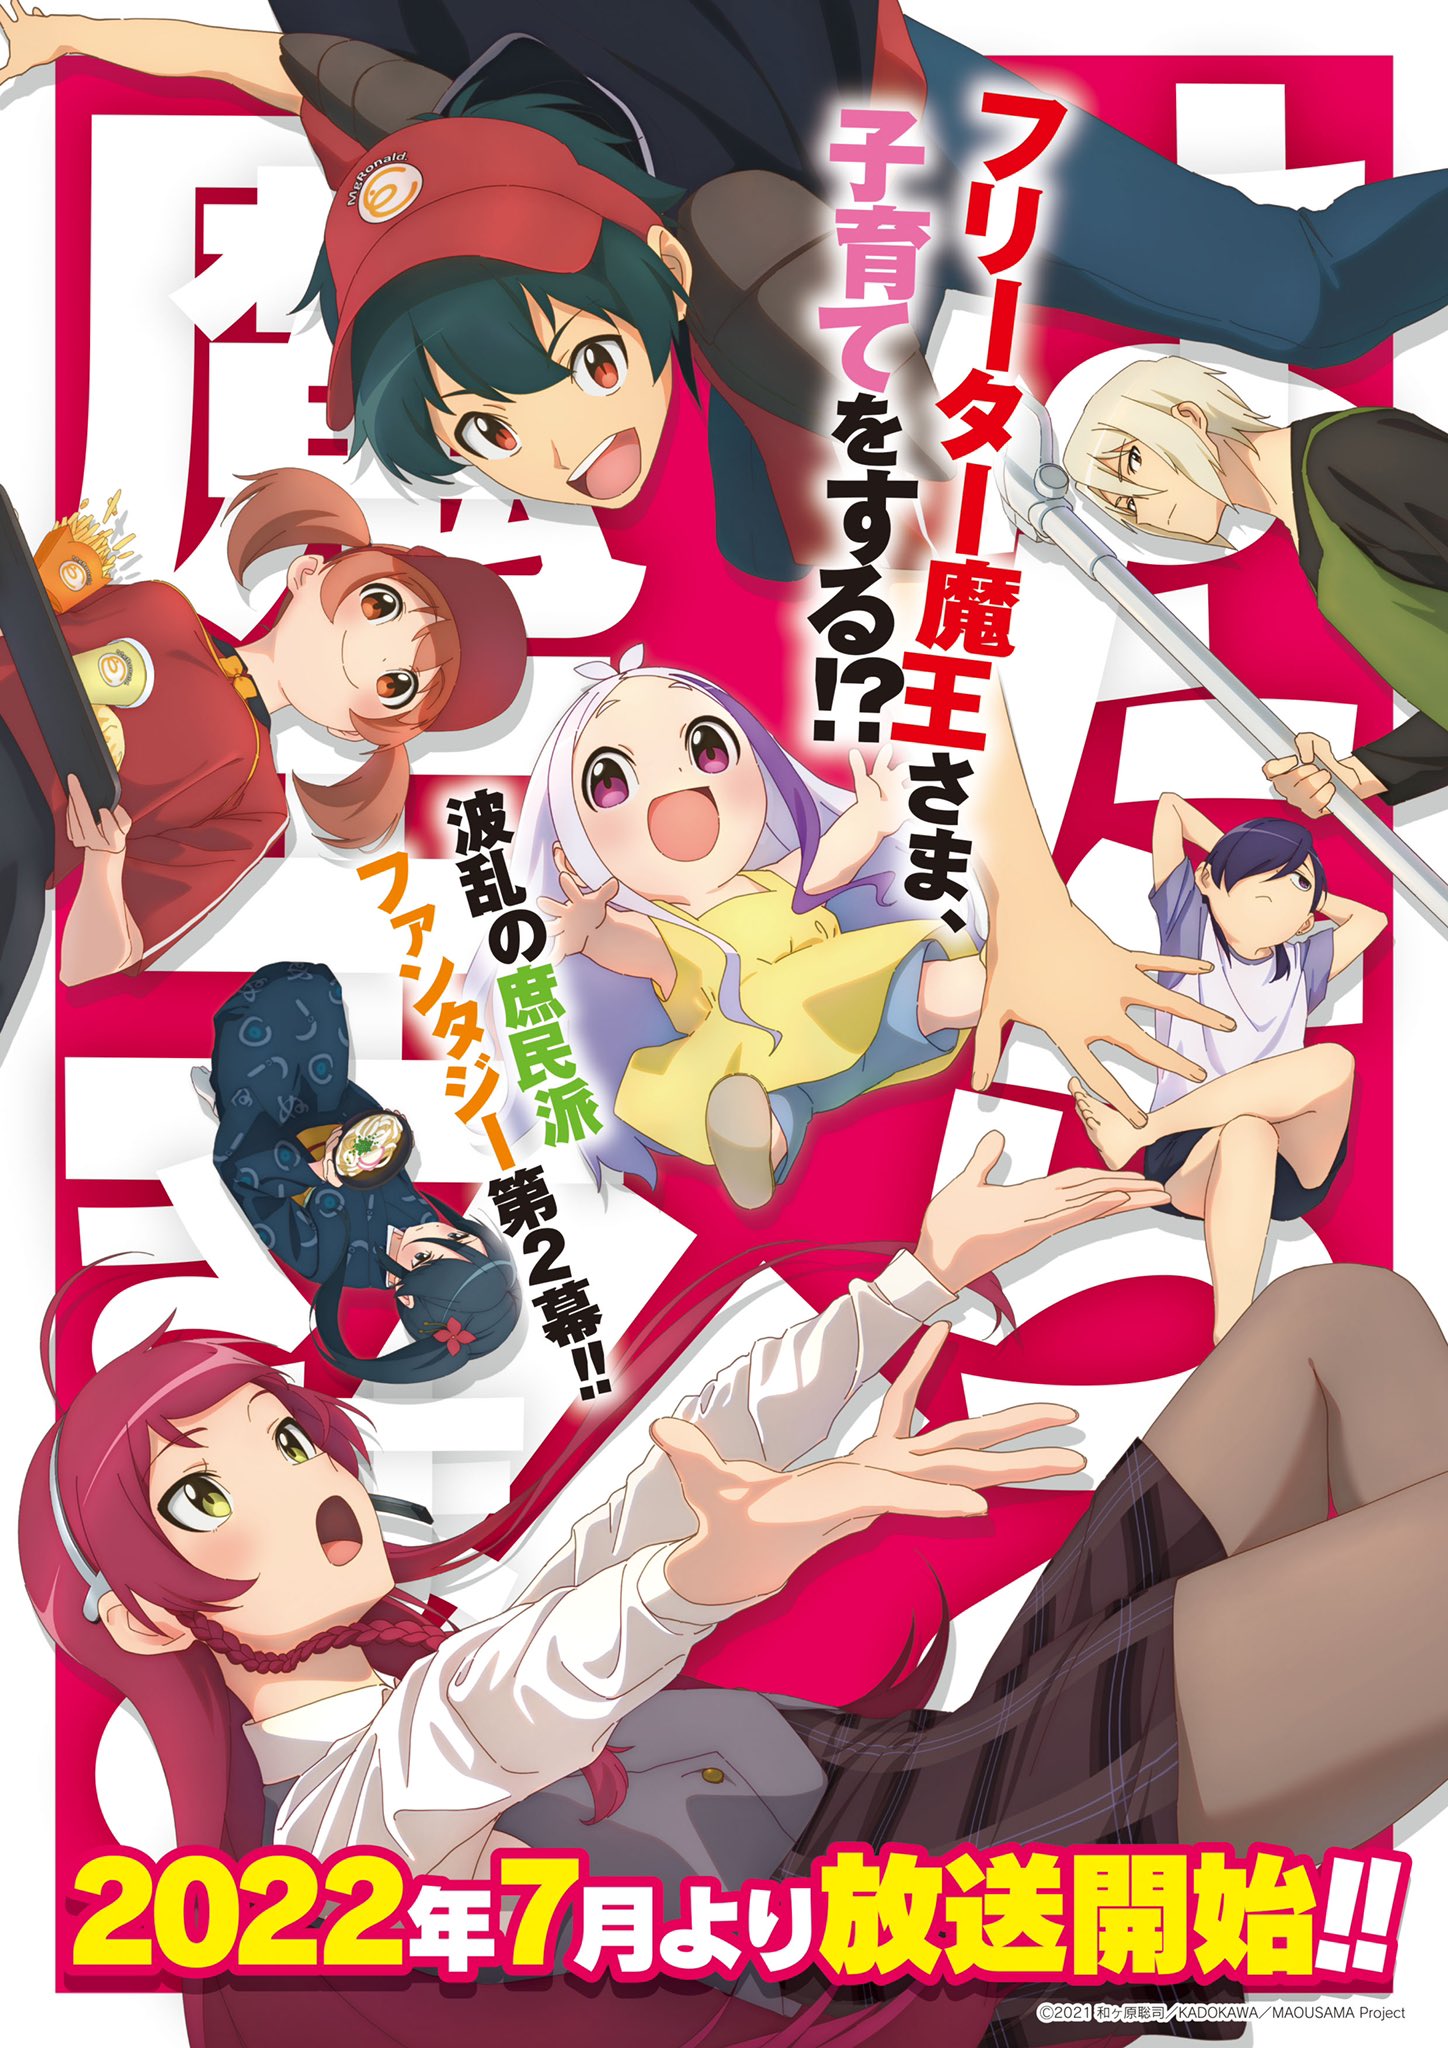 Assistir Hataraku Maou-sama! 2 Online em PT-BR - Animes Online